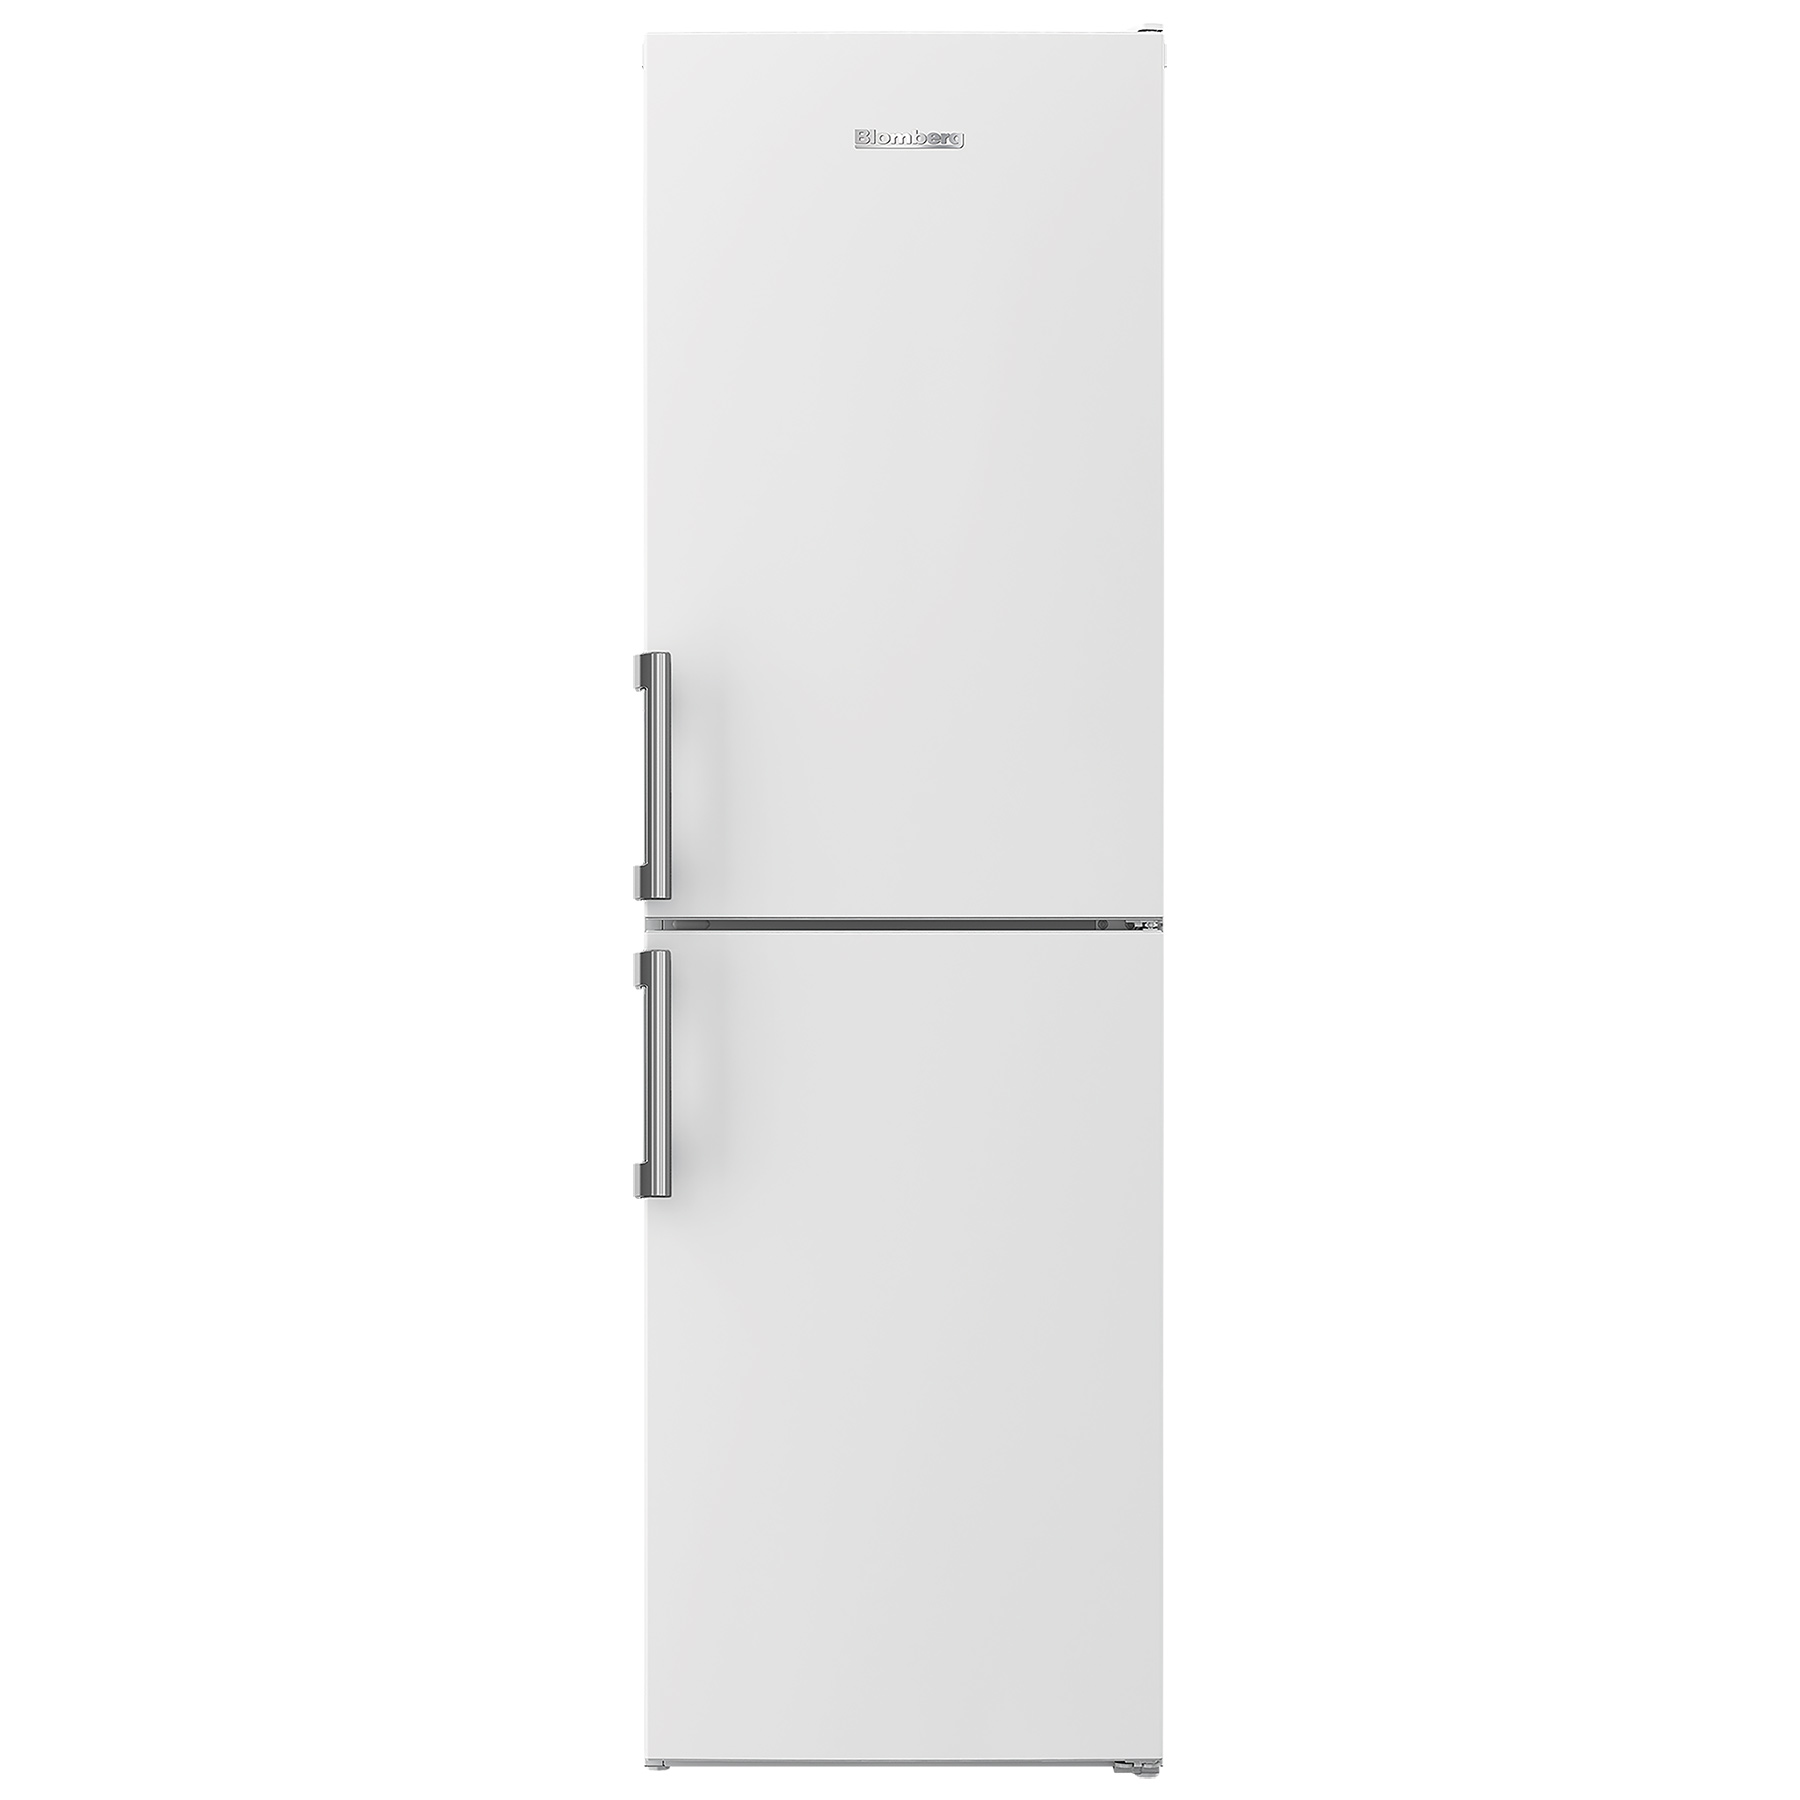 Image of Blomberg KGM4574V 54cm Frost Free Fridge Freezer in White1 82m F